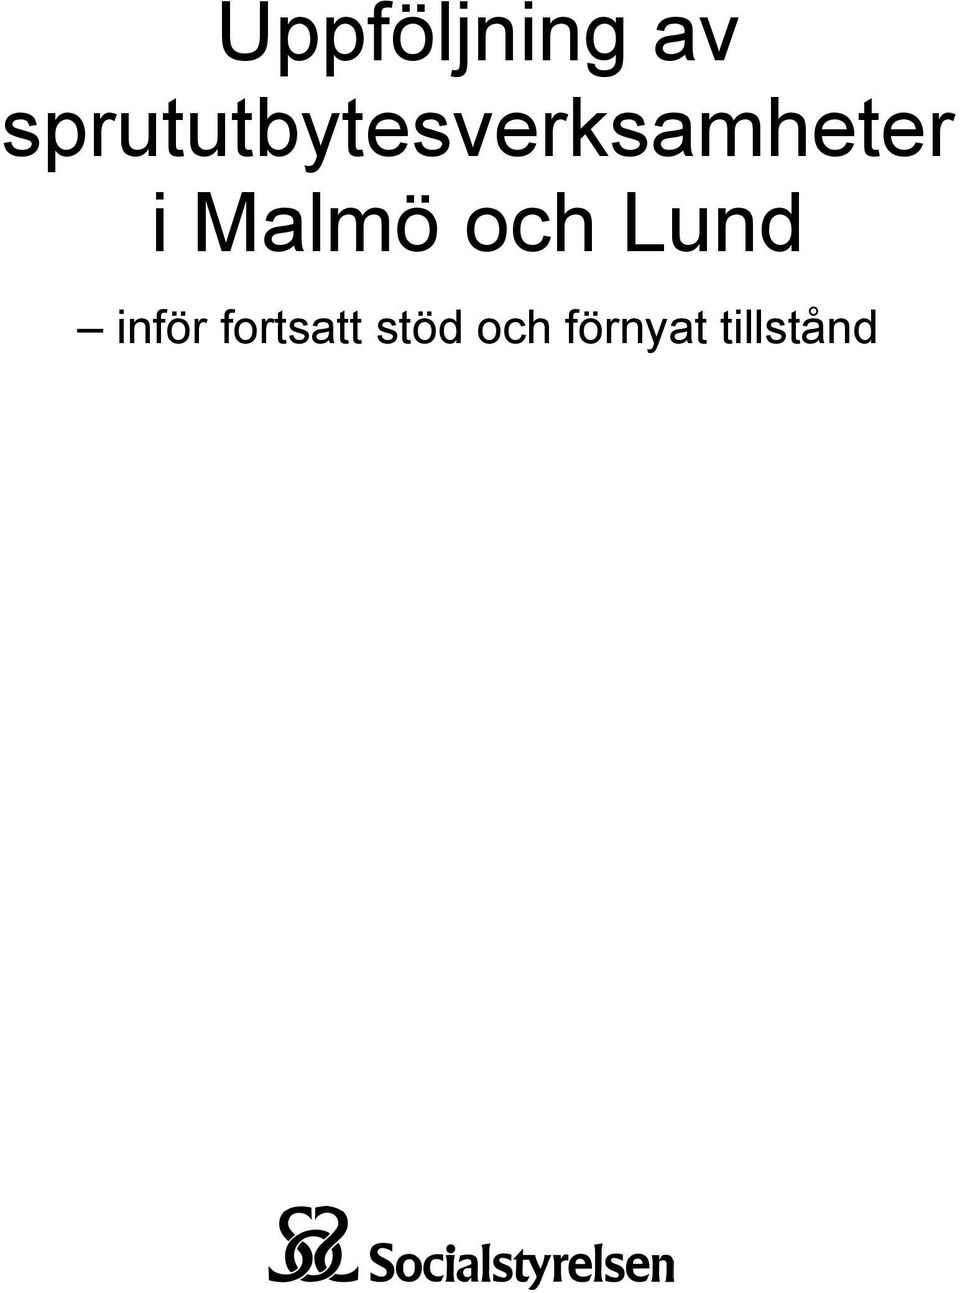 i Malmö och Lund inför